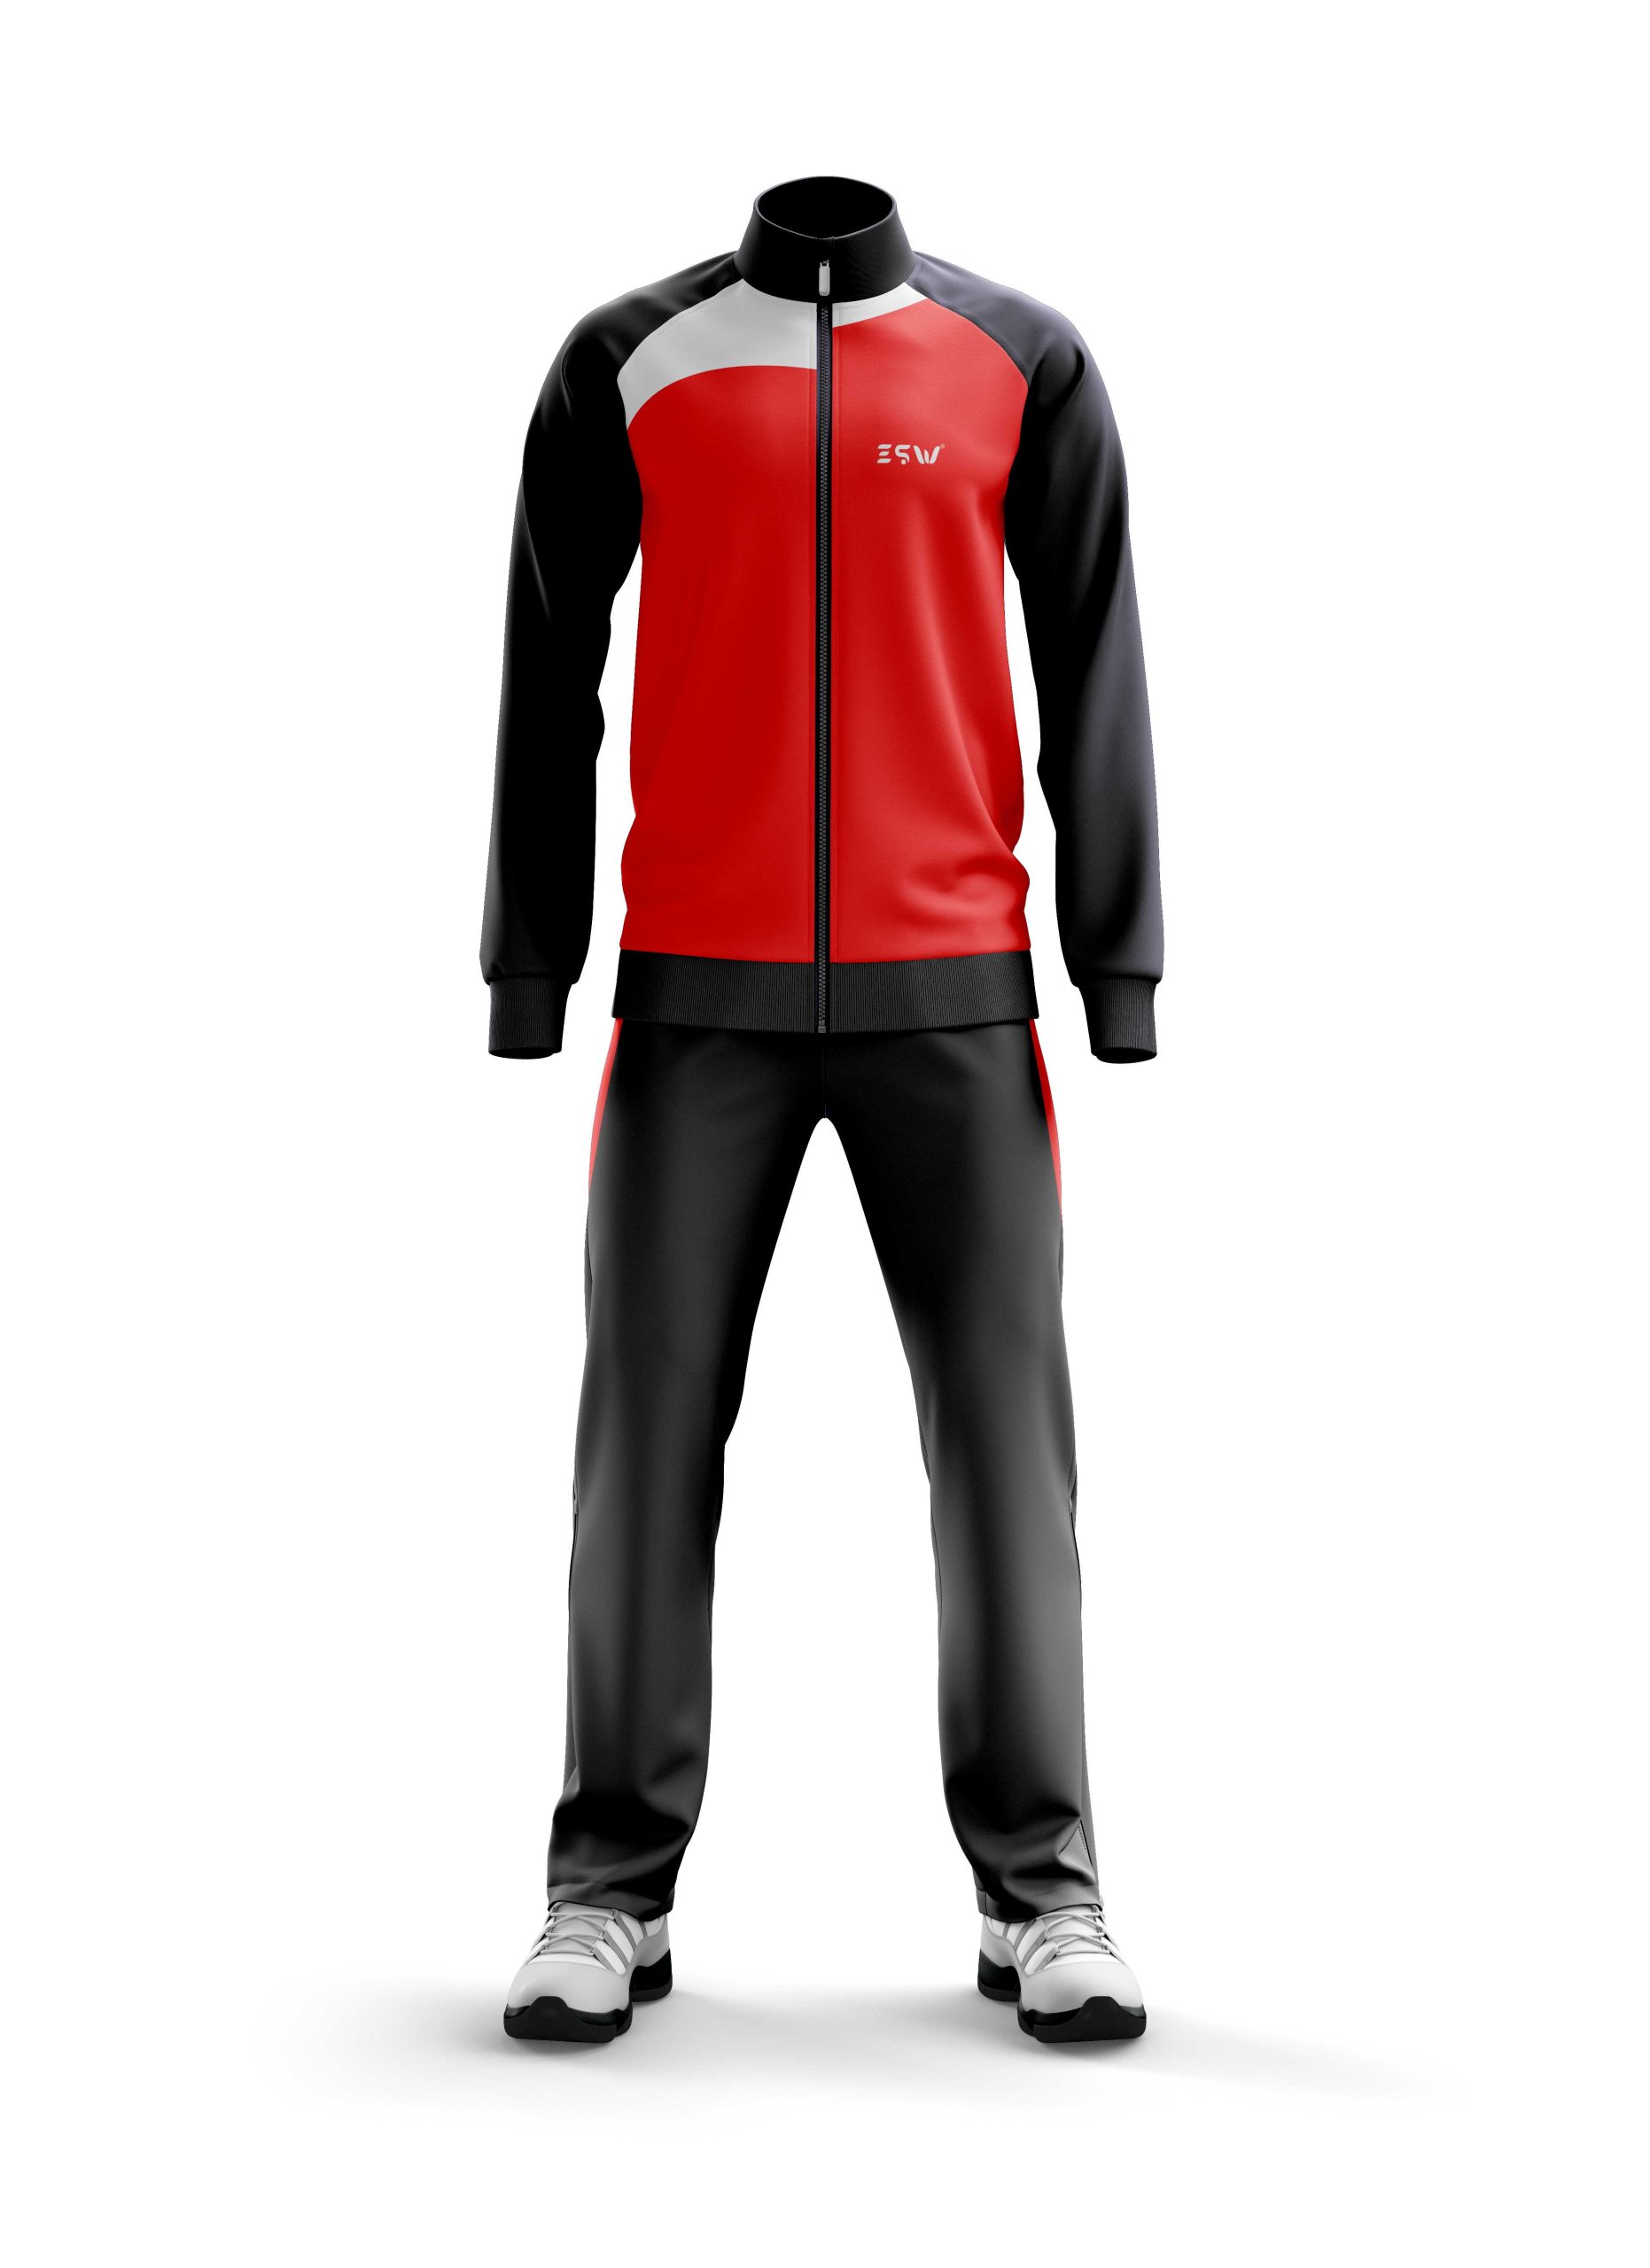 Tracksuit Design 1 - Evolution Sports Wear